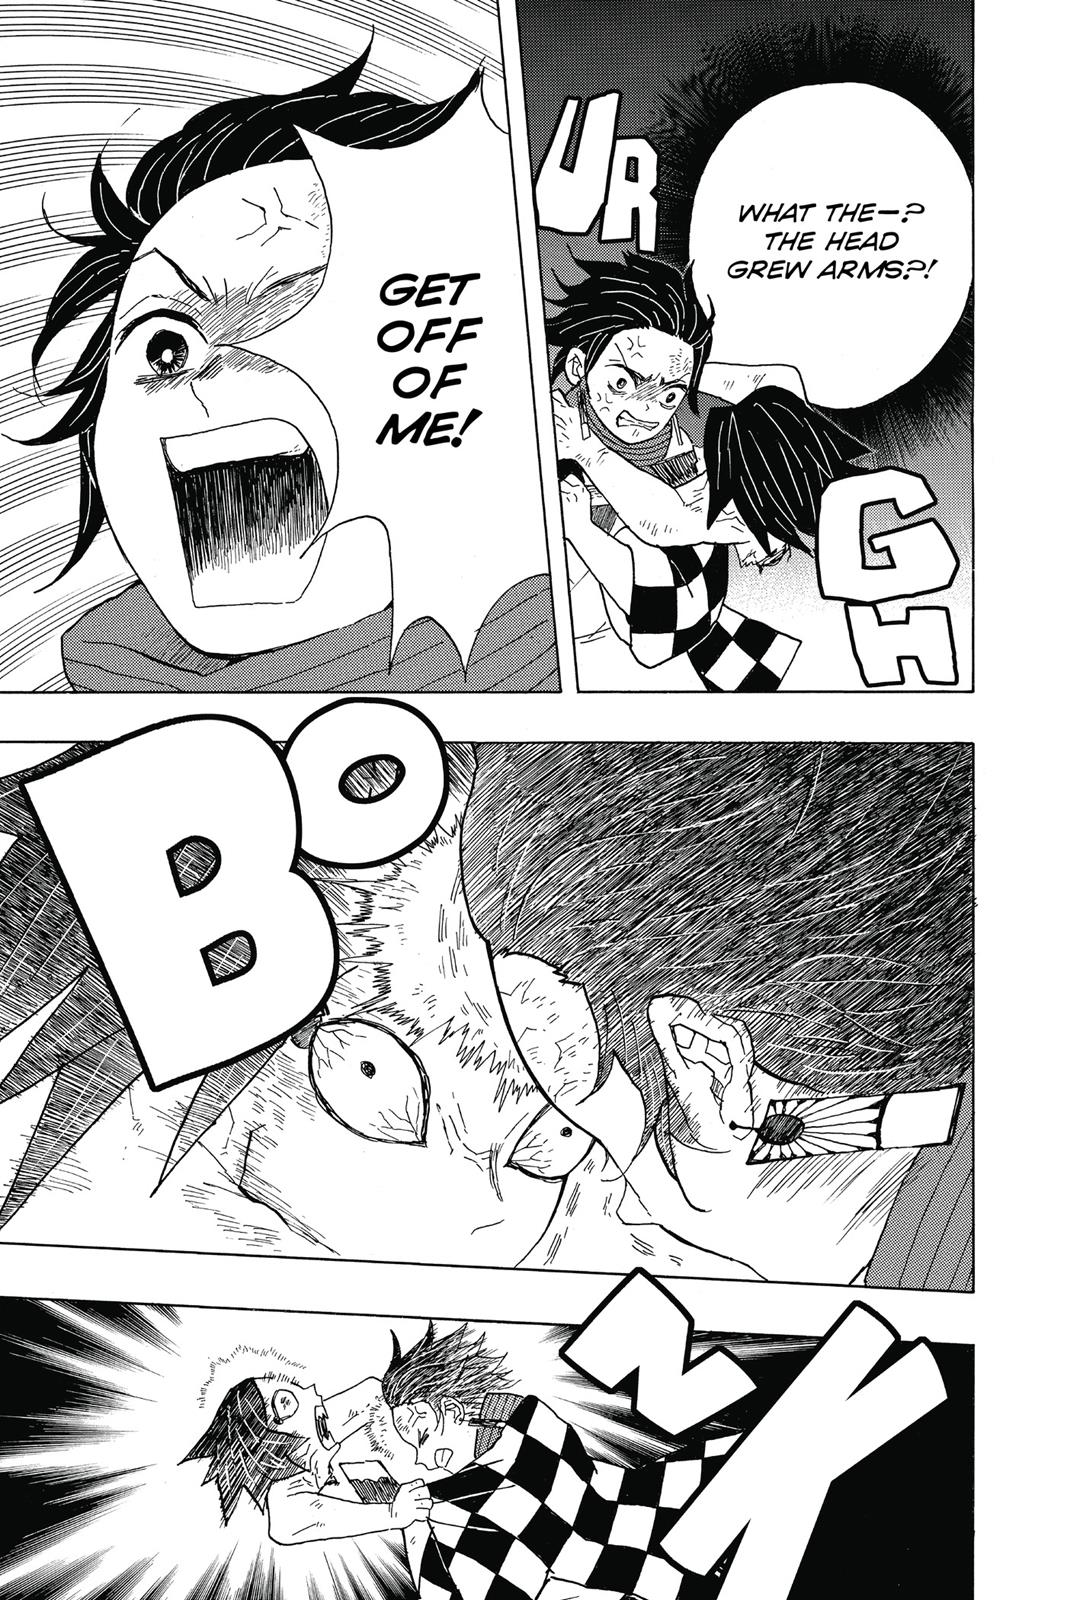 Demon Slayer Manga Manga Chapter - 2 - image 11